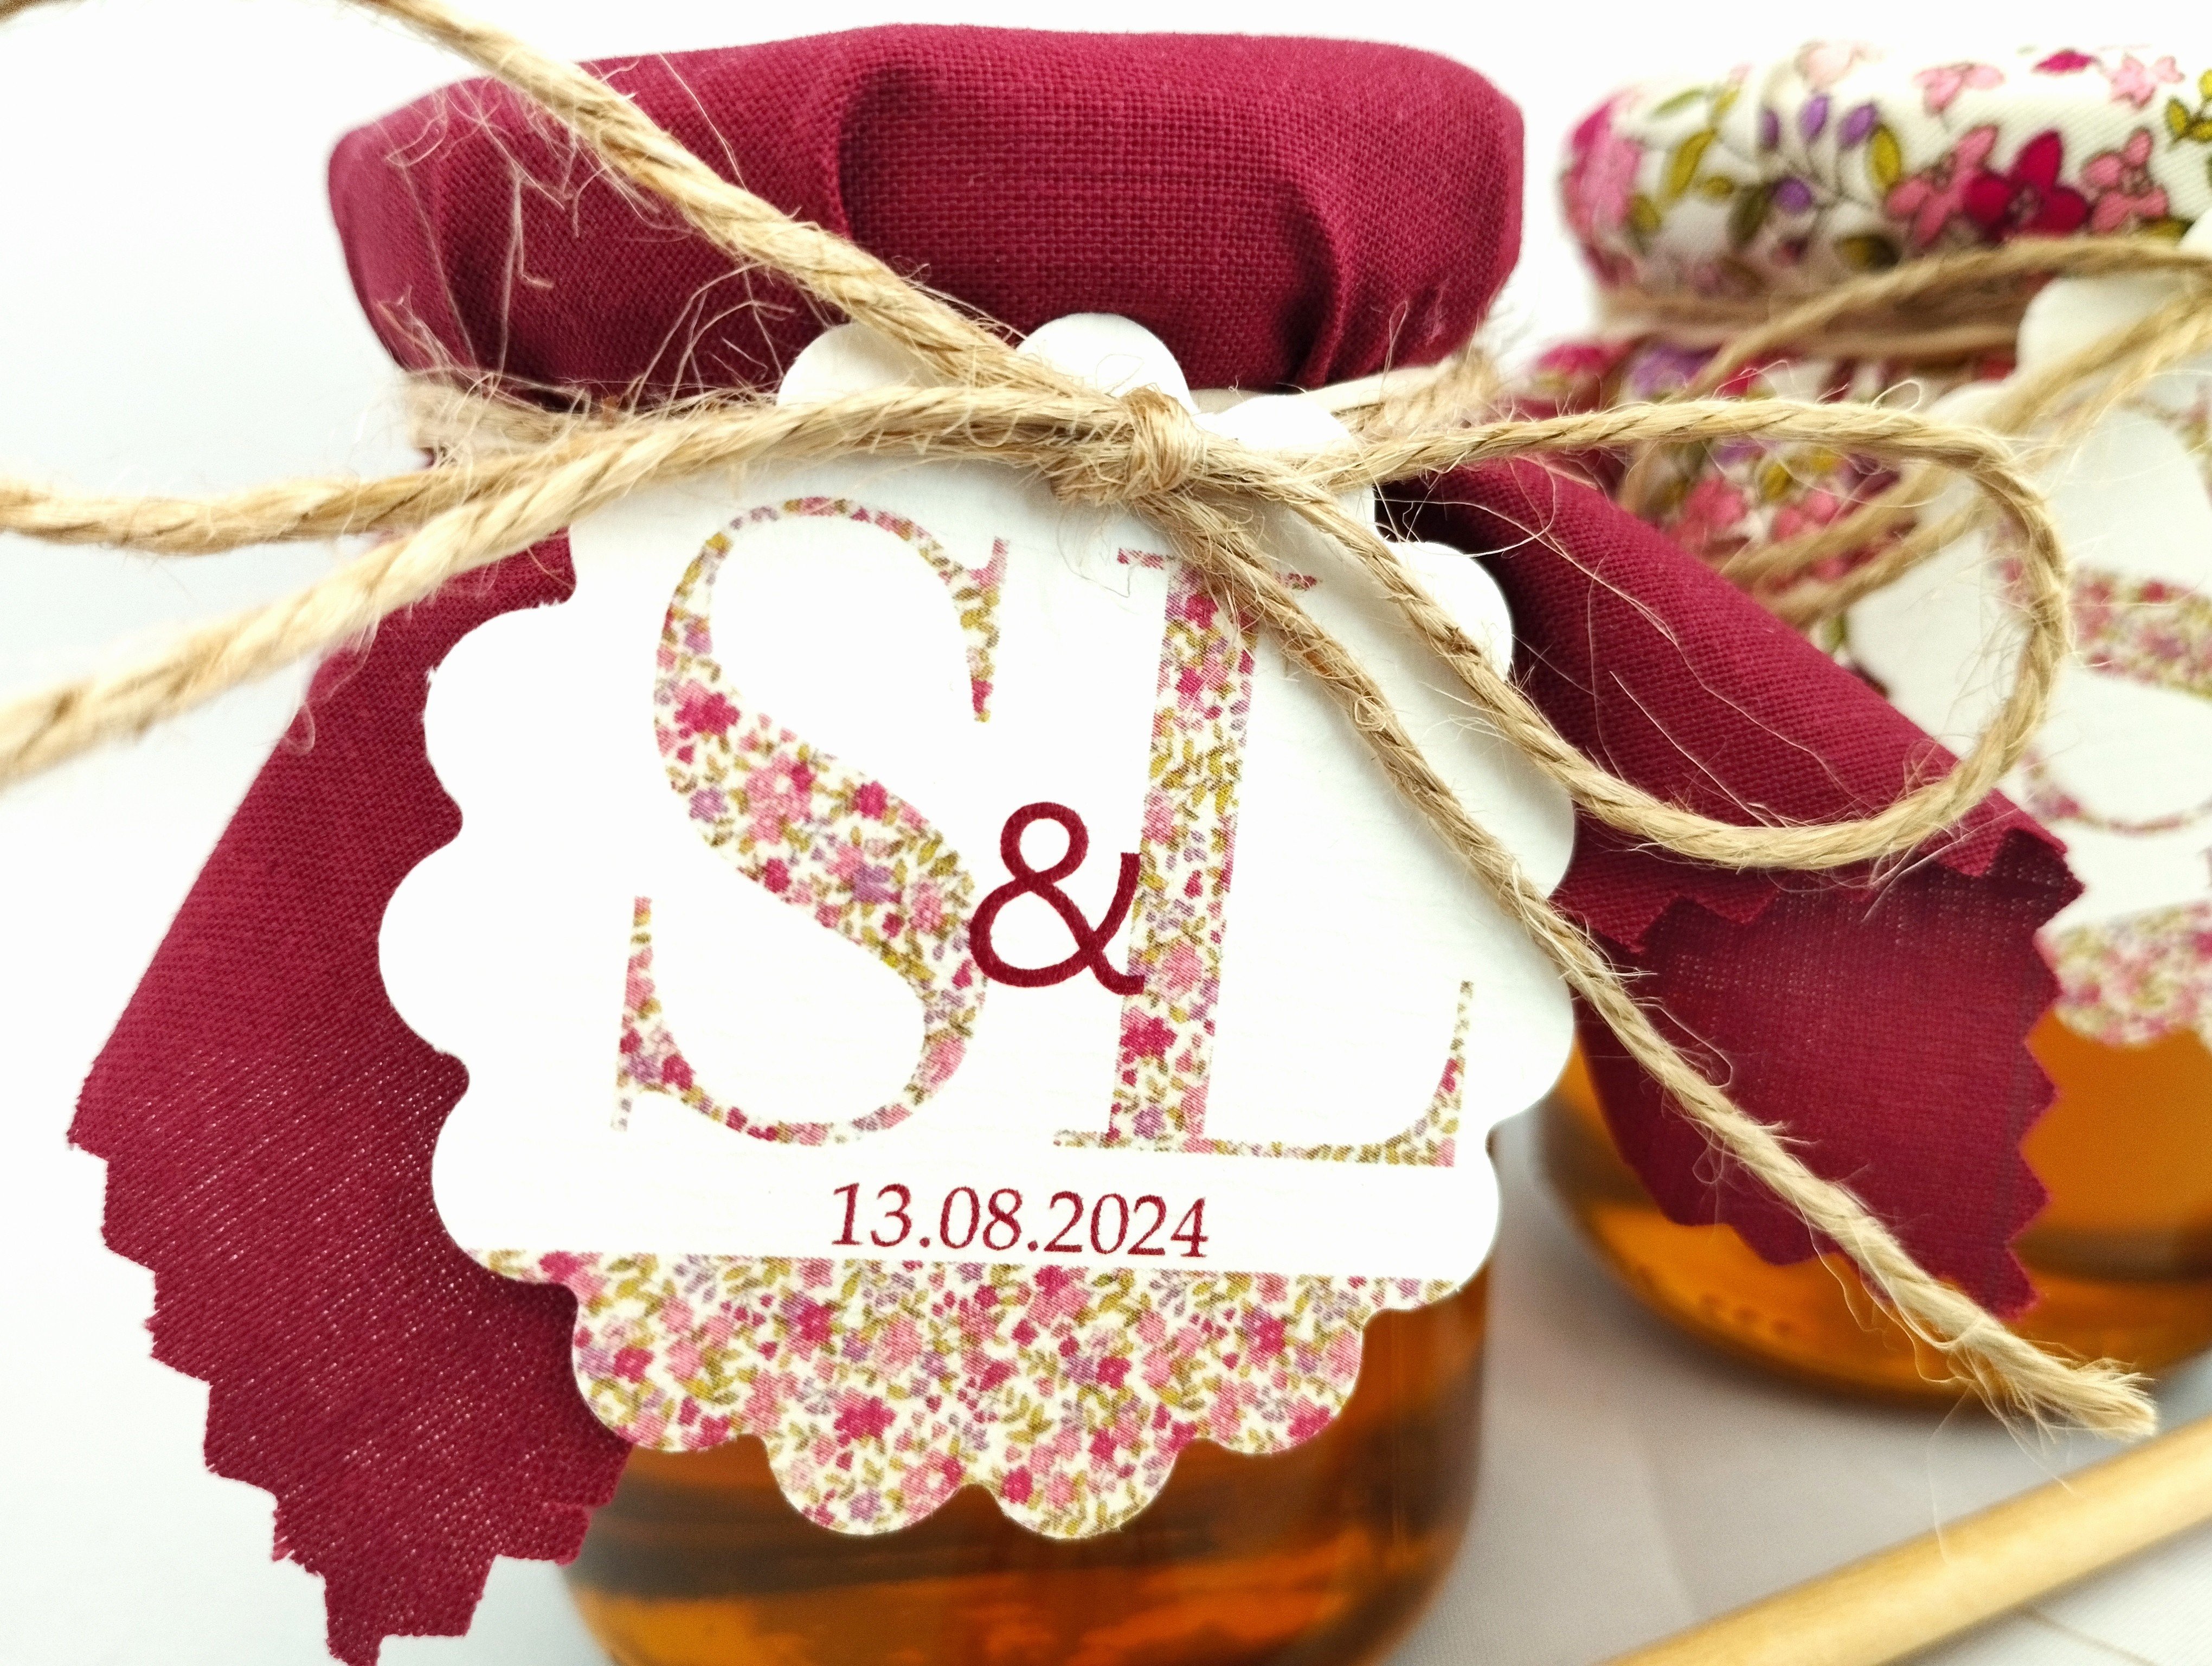 pack 16 tarros de miel :: detalles & regalos :: Detalles invitados boda